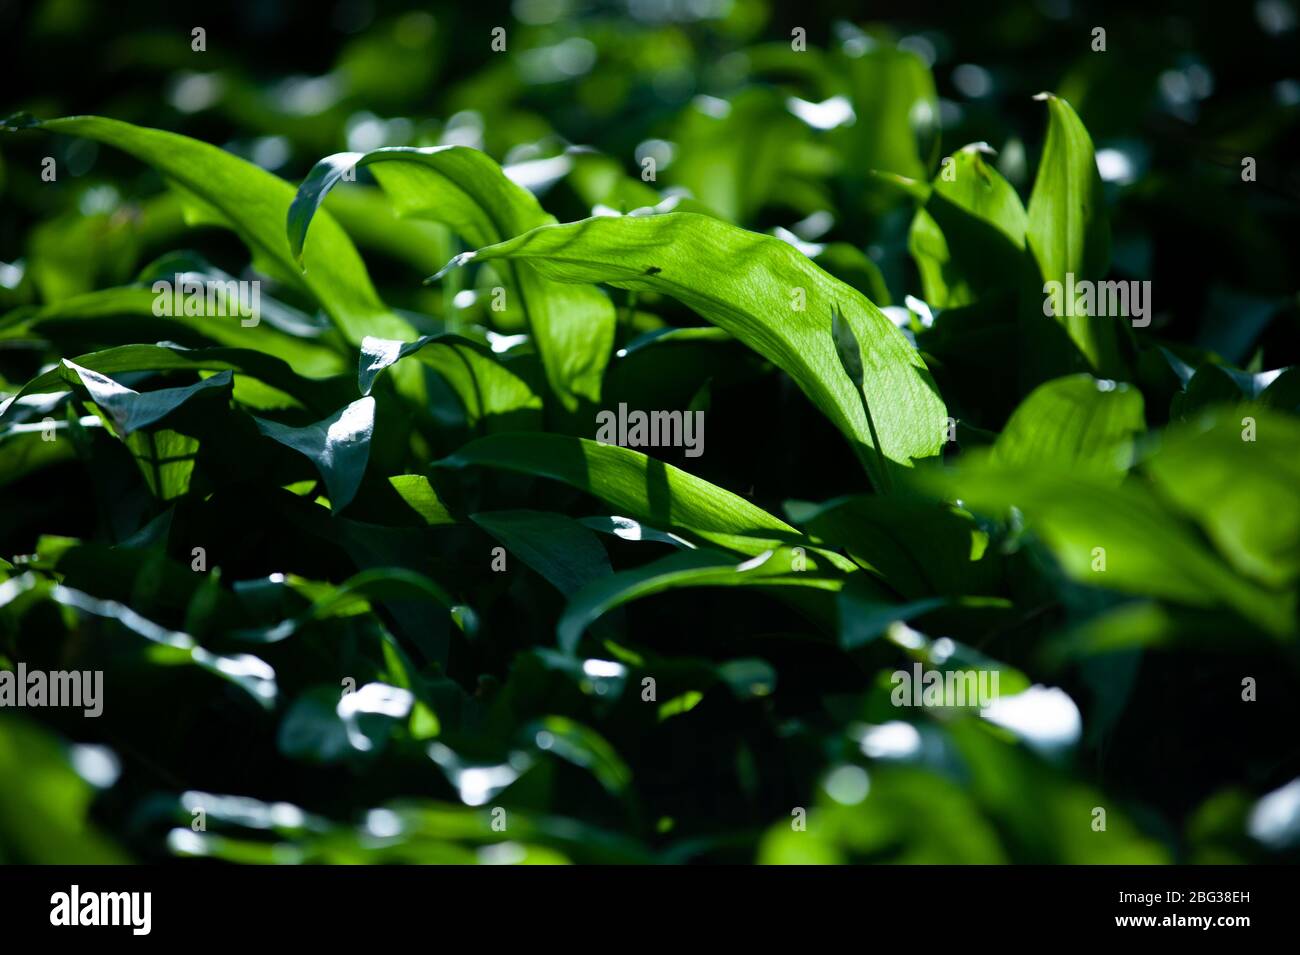 Frühling im europäischen Wald. Allium ursinum bekannt es Bärlauch, Ramsons, Buckrams, breitblättrigen Knoblauch, Knoblauch, Bärlauch oder Bärlauch. Stockfoto